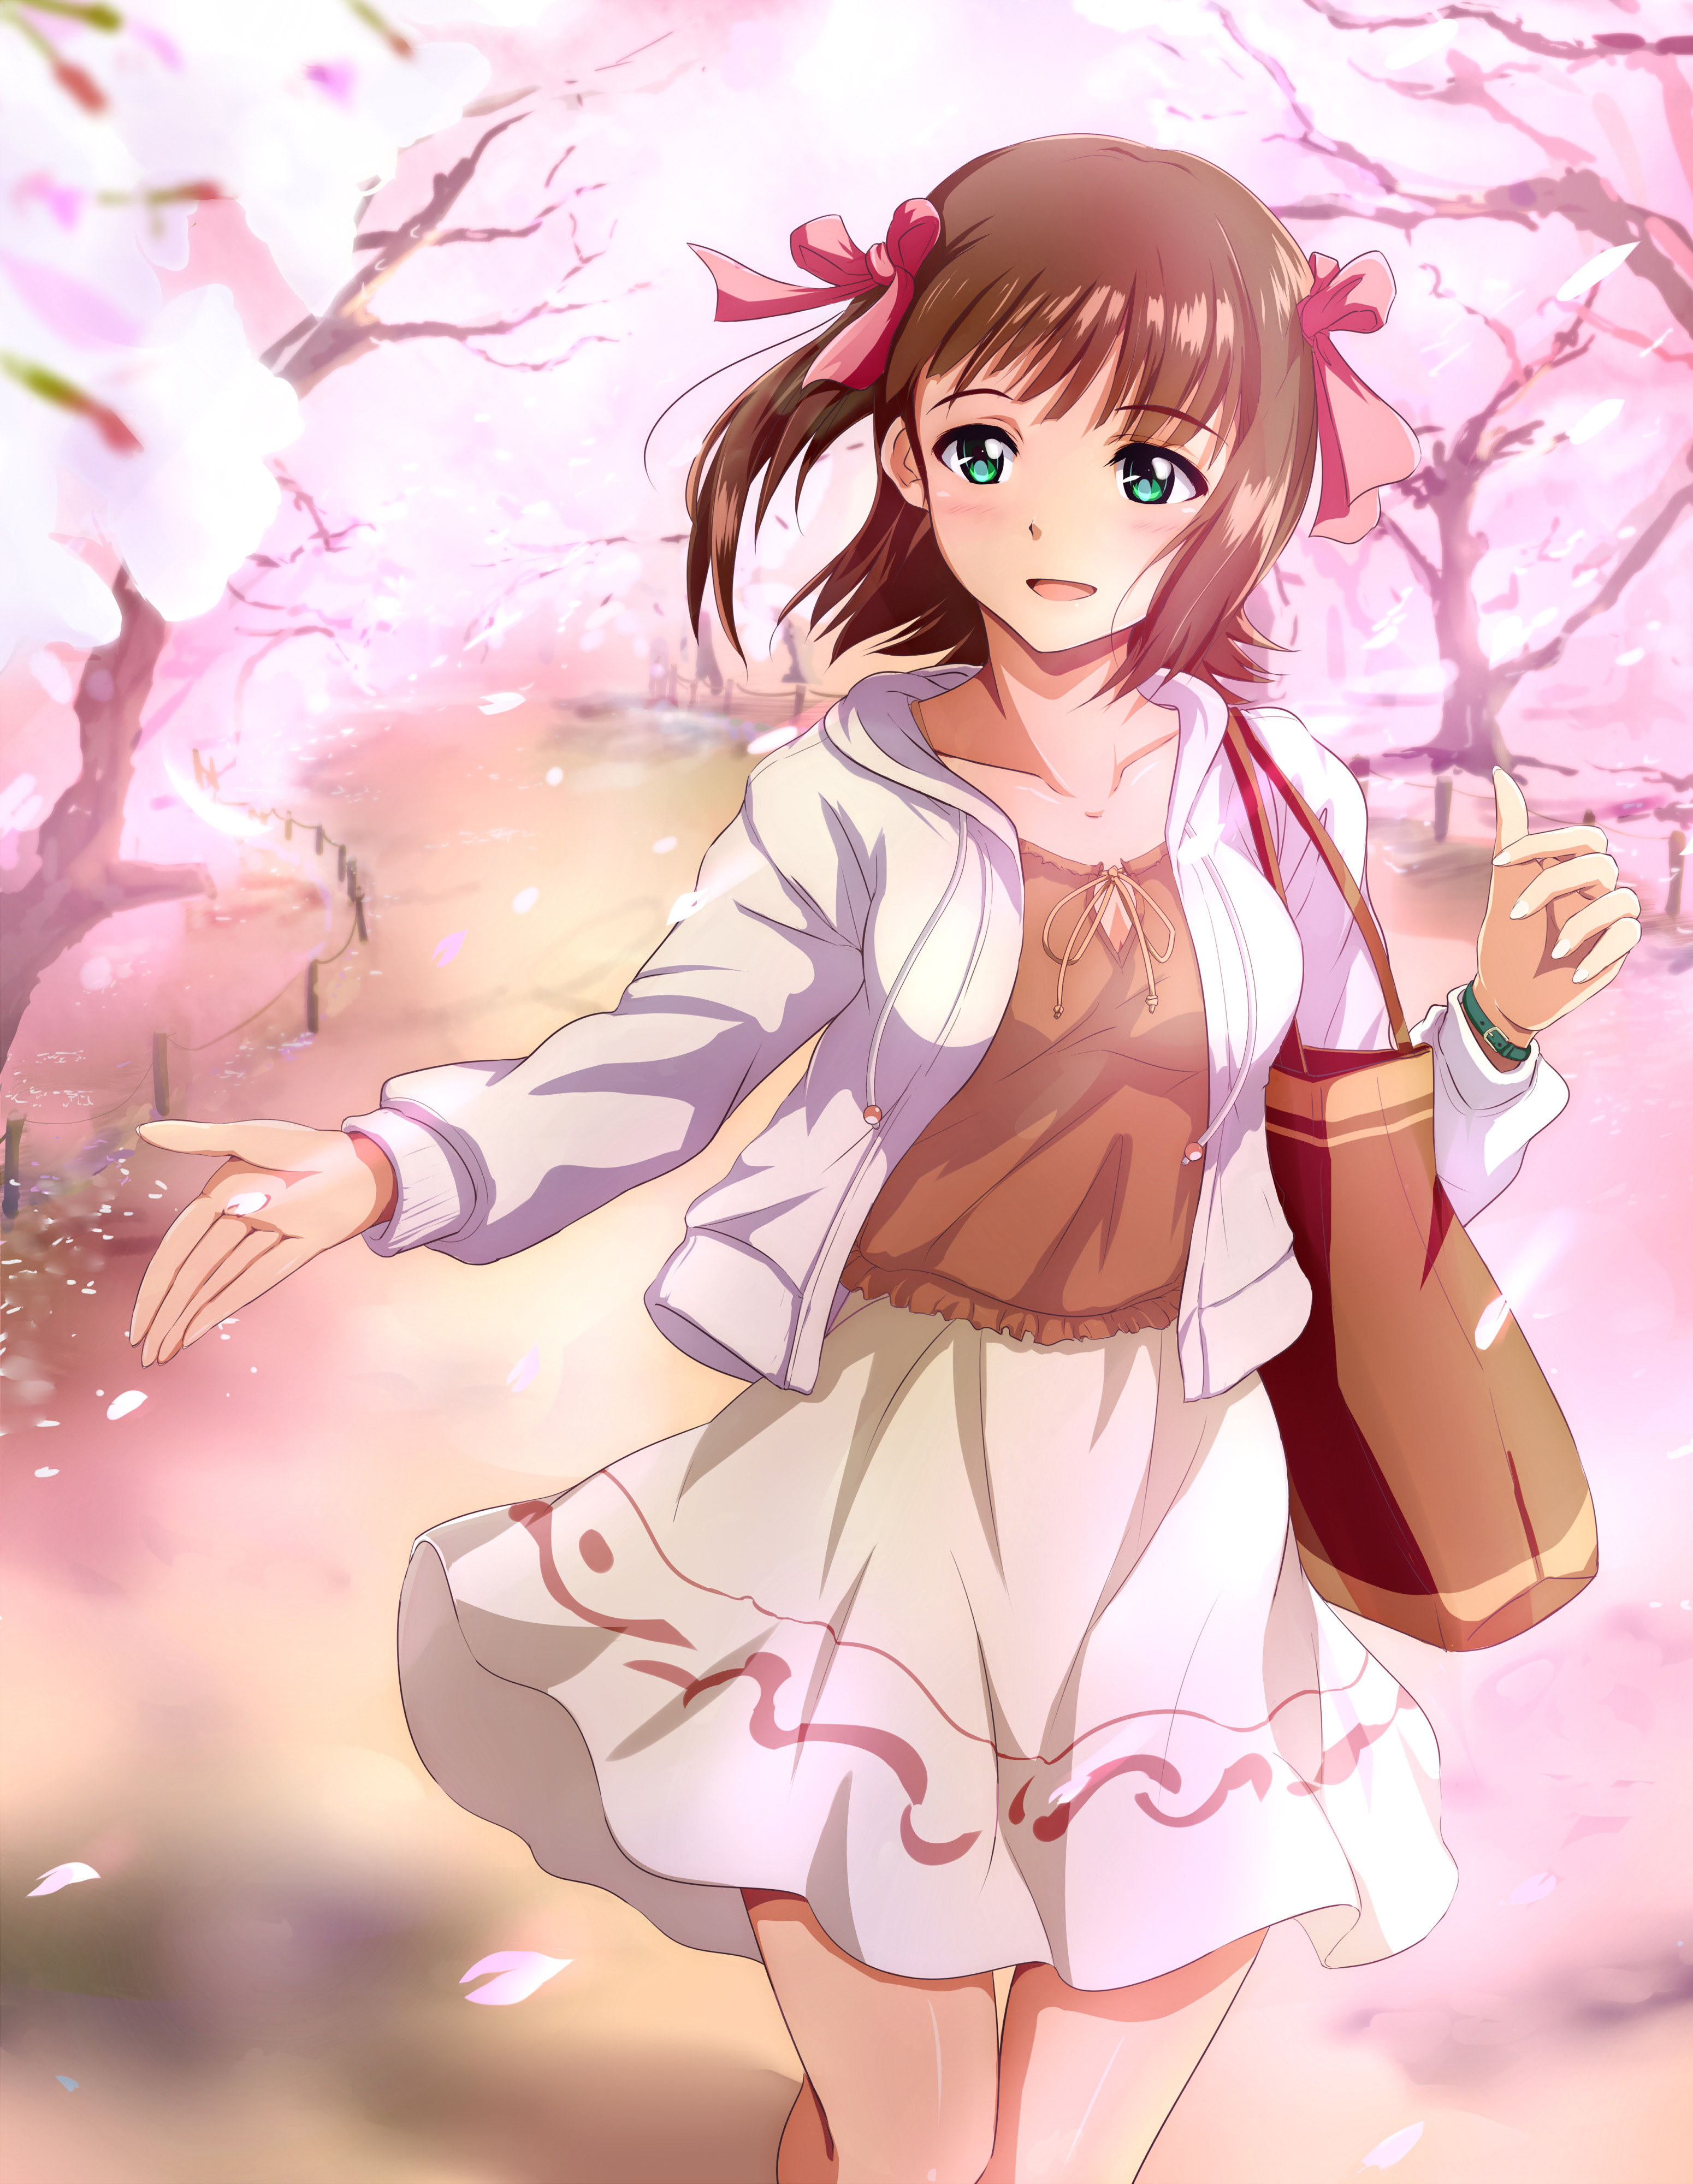 満開の桜と写る女の子は美しい 桜 女子 のイラストまとめの画像 03 Sakura